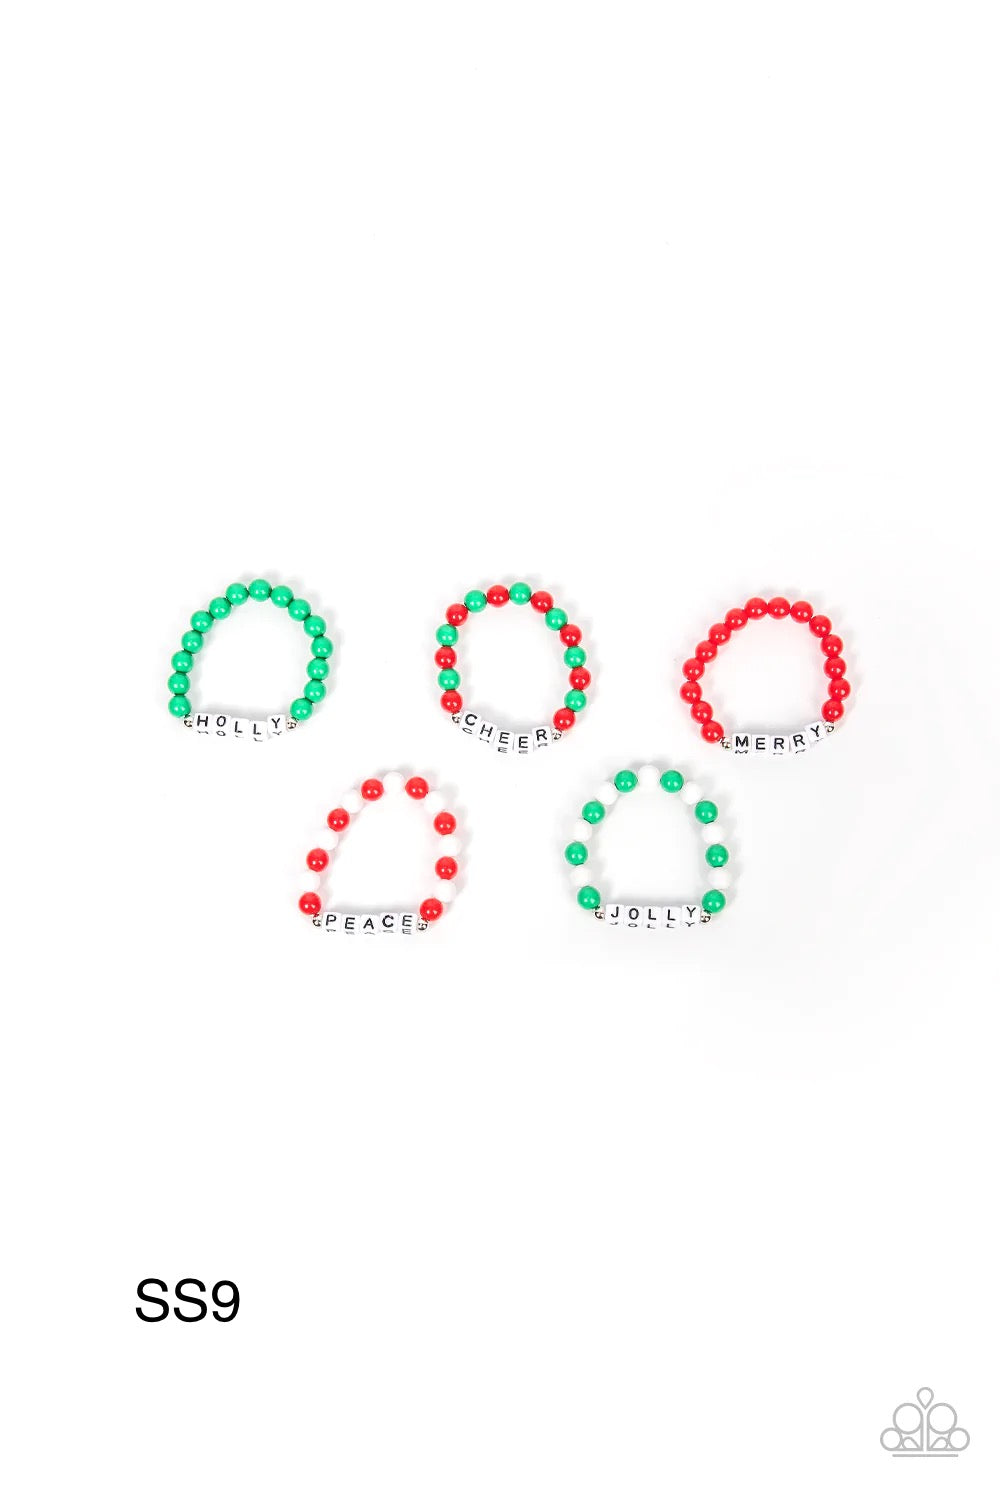 Paparazzi - Starlet Shimmer - Holiday Kids Bracelets Set of 5